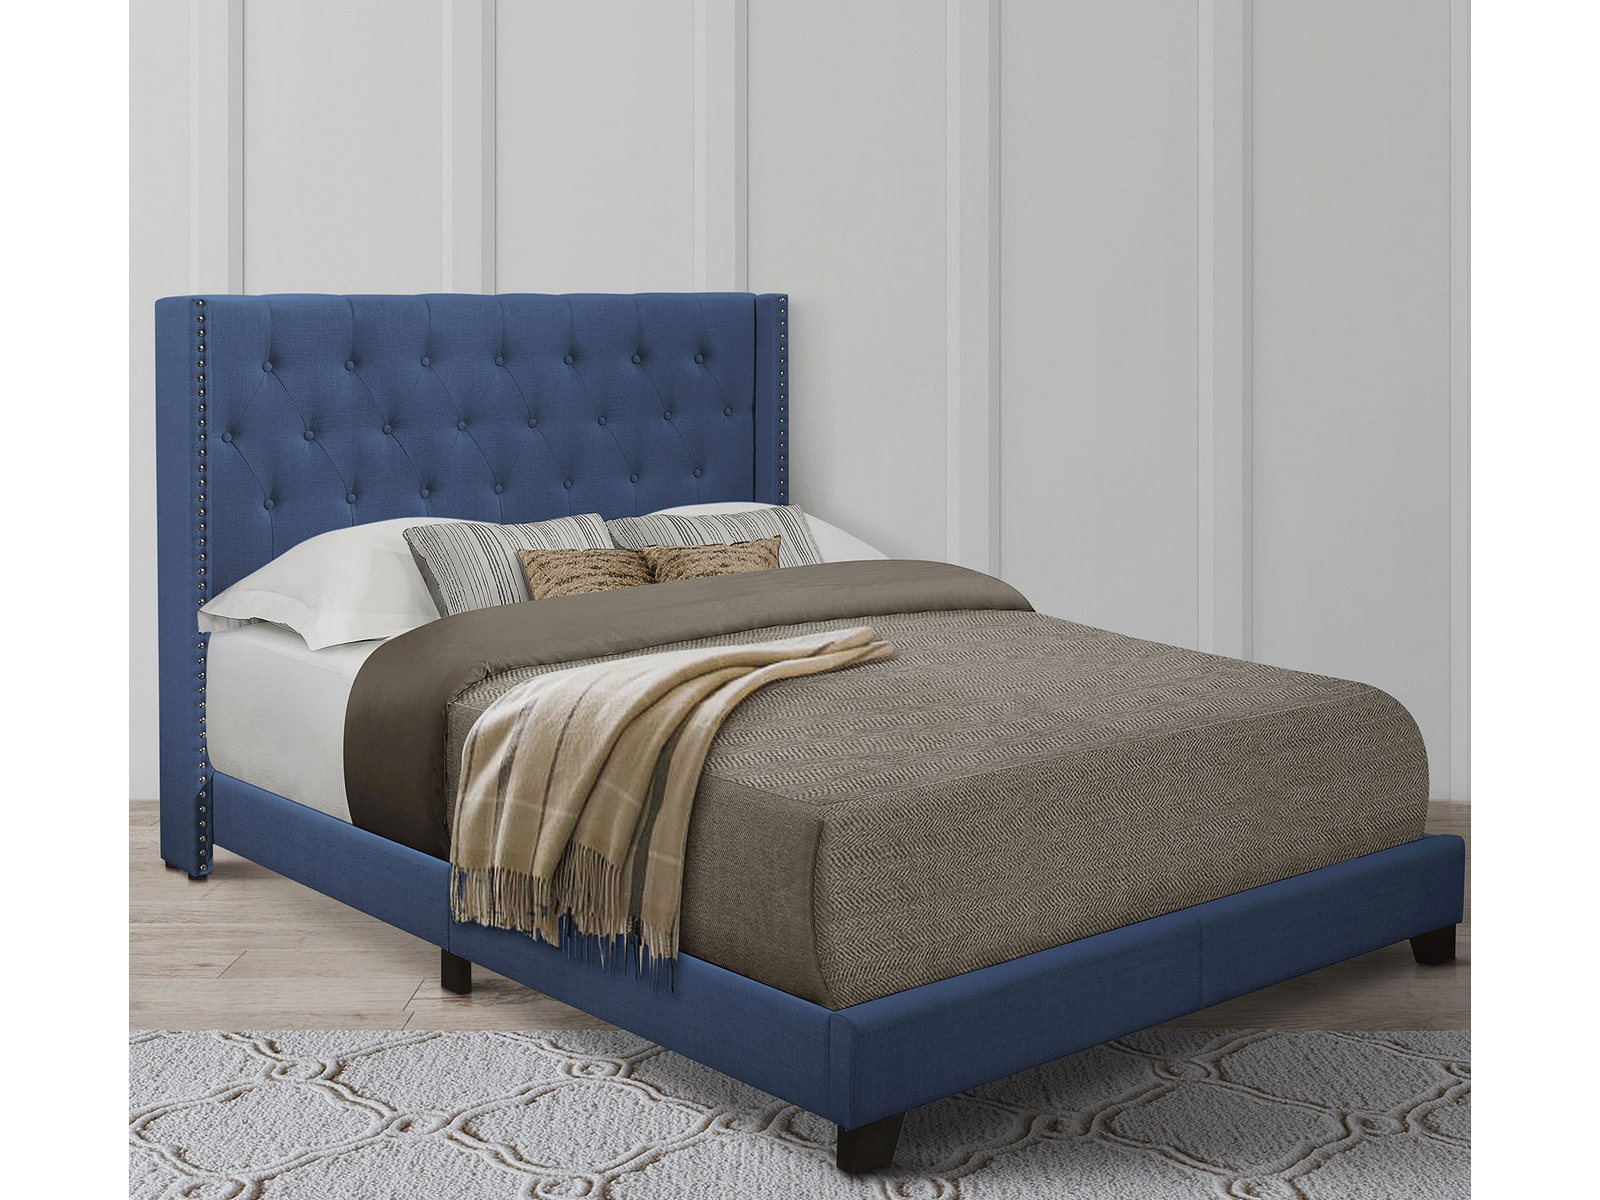 Homelegance Upholstered Bed Set | Full | Avery Bed Frame & Headboard | Blue